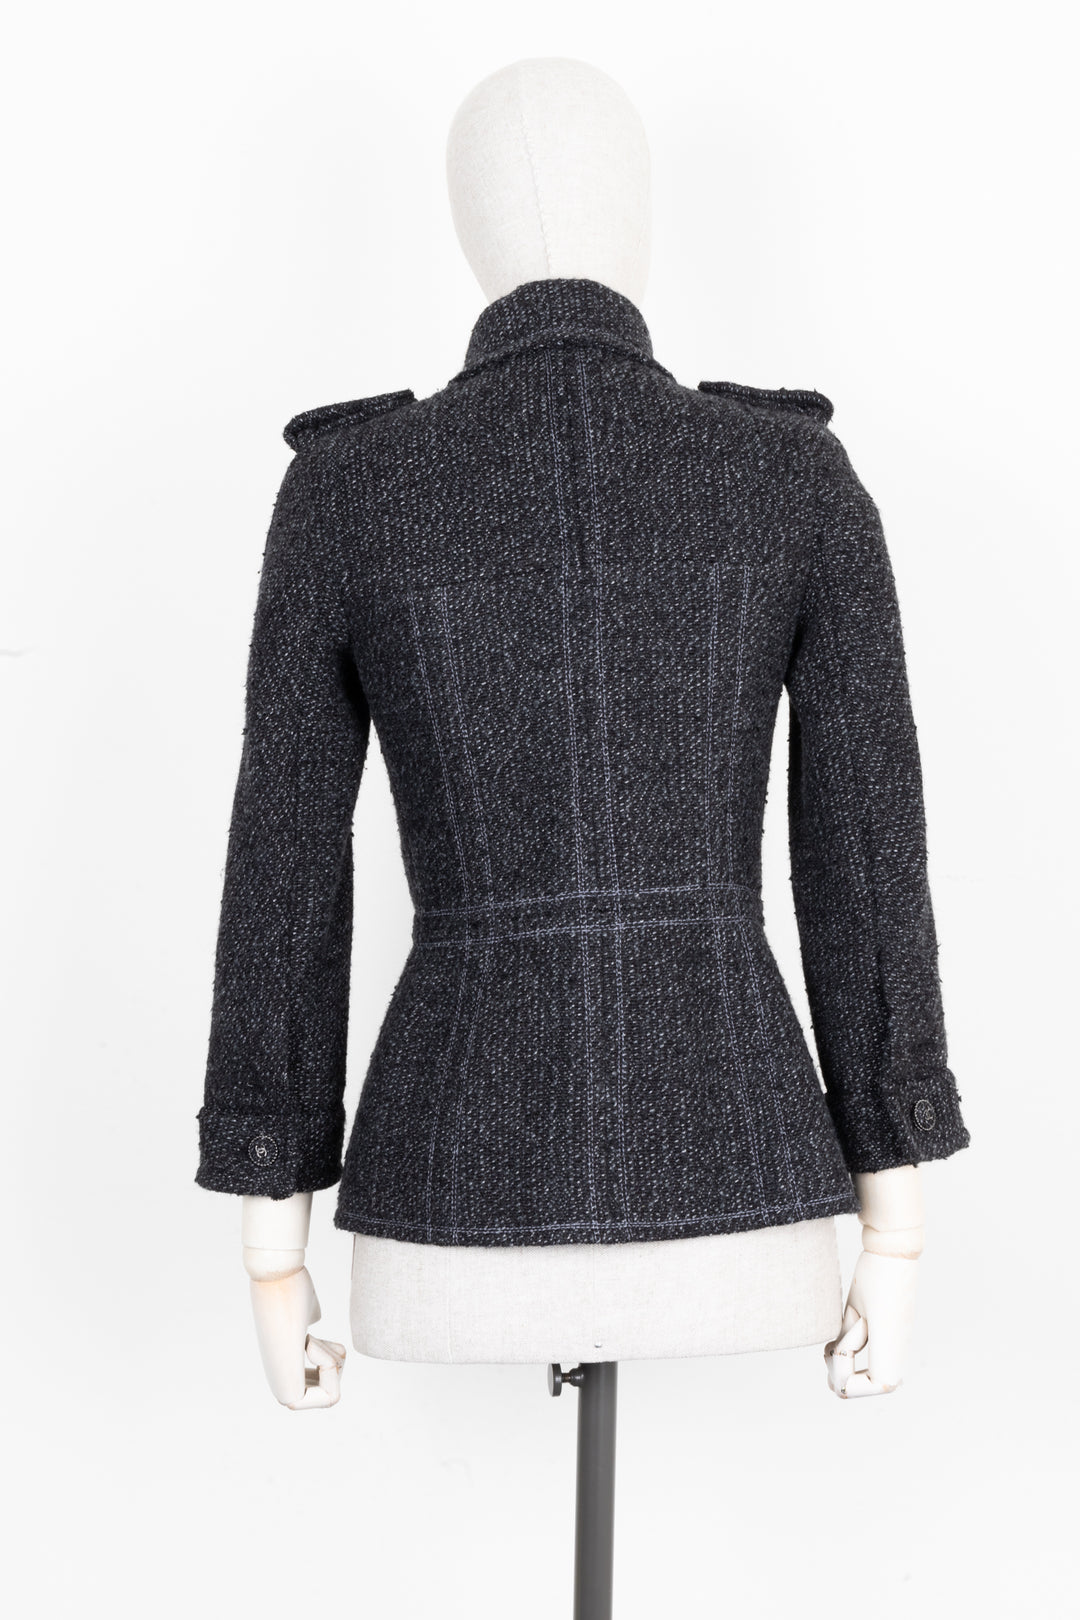 CHANEL 2013 Tweed Jacket Charcoal